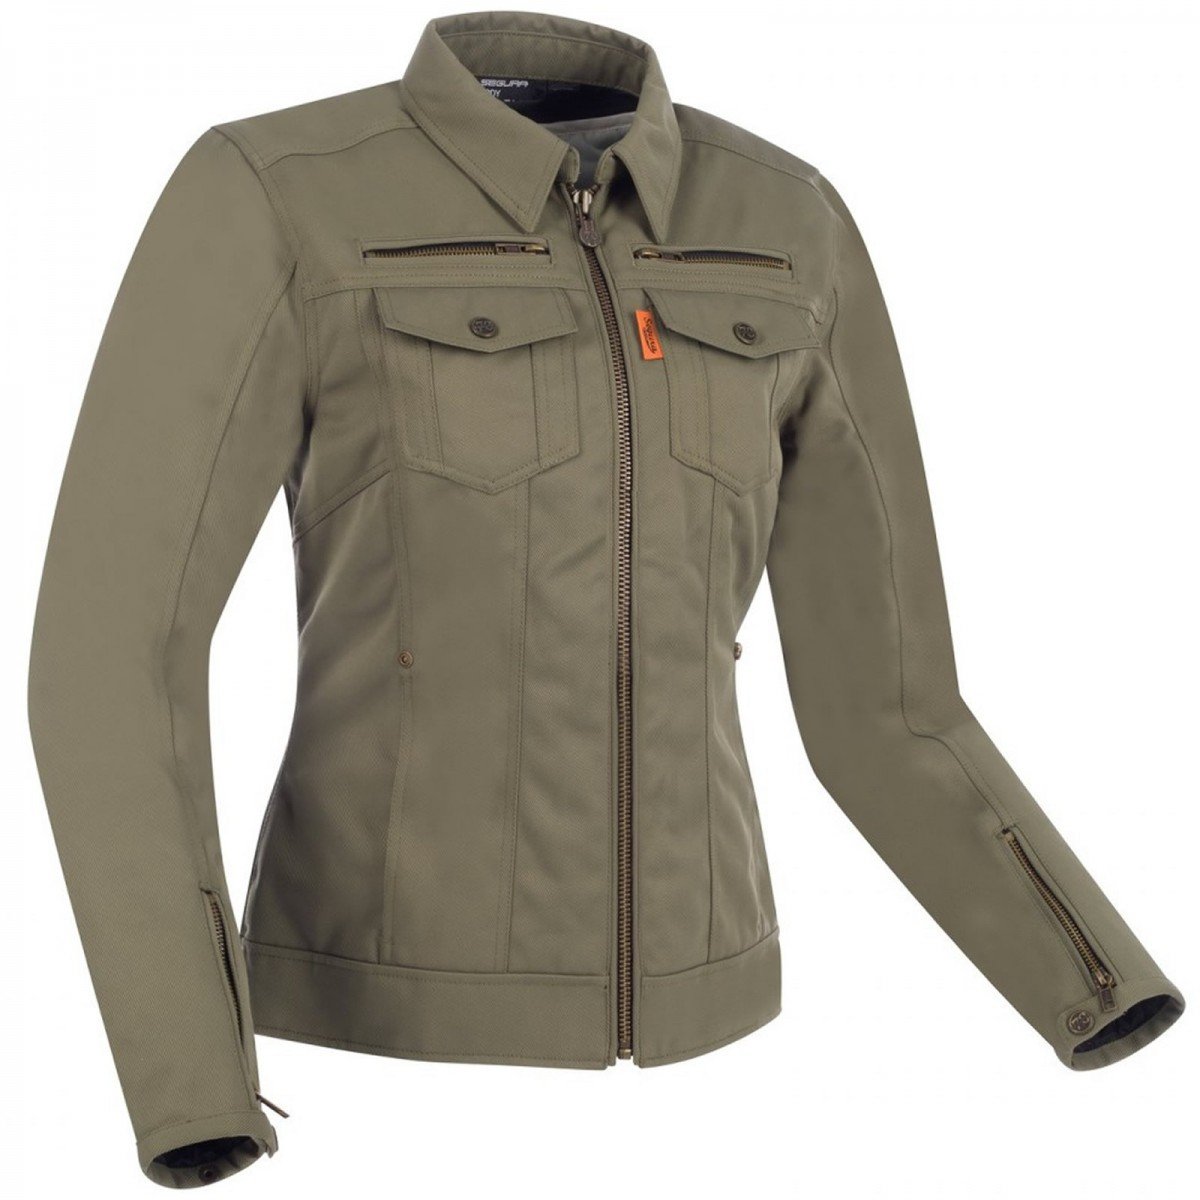 Image of Segura Lady Patrol Jacket Khaki Size T1 ID 3660815163177